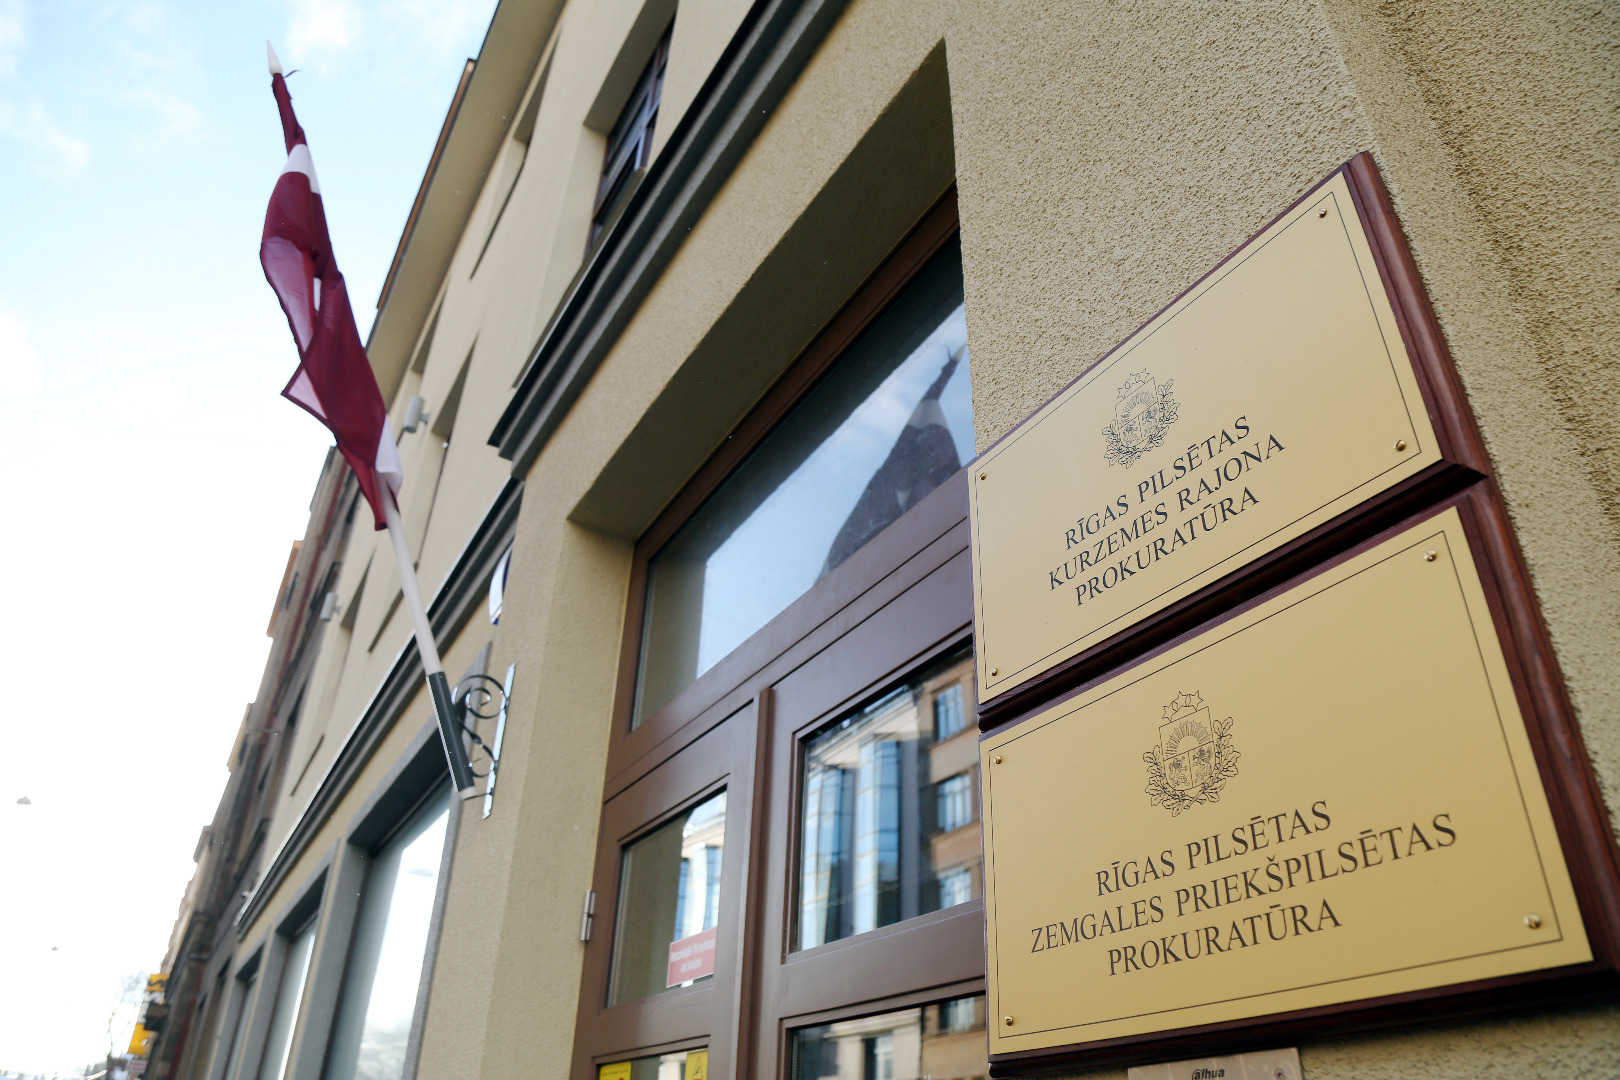 Prokuratūras jauno telpu Rīgā, Kalnciema ielā 14 atklāšanas pasākums 2019.gada 21.janvārī (foto - LETA)